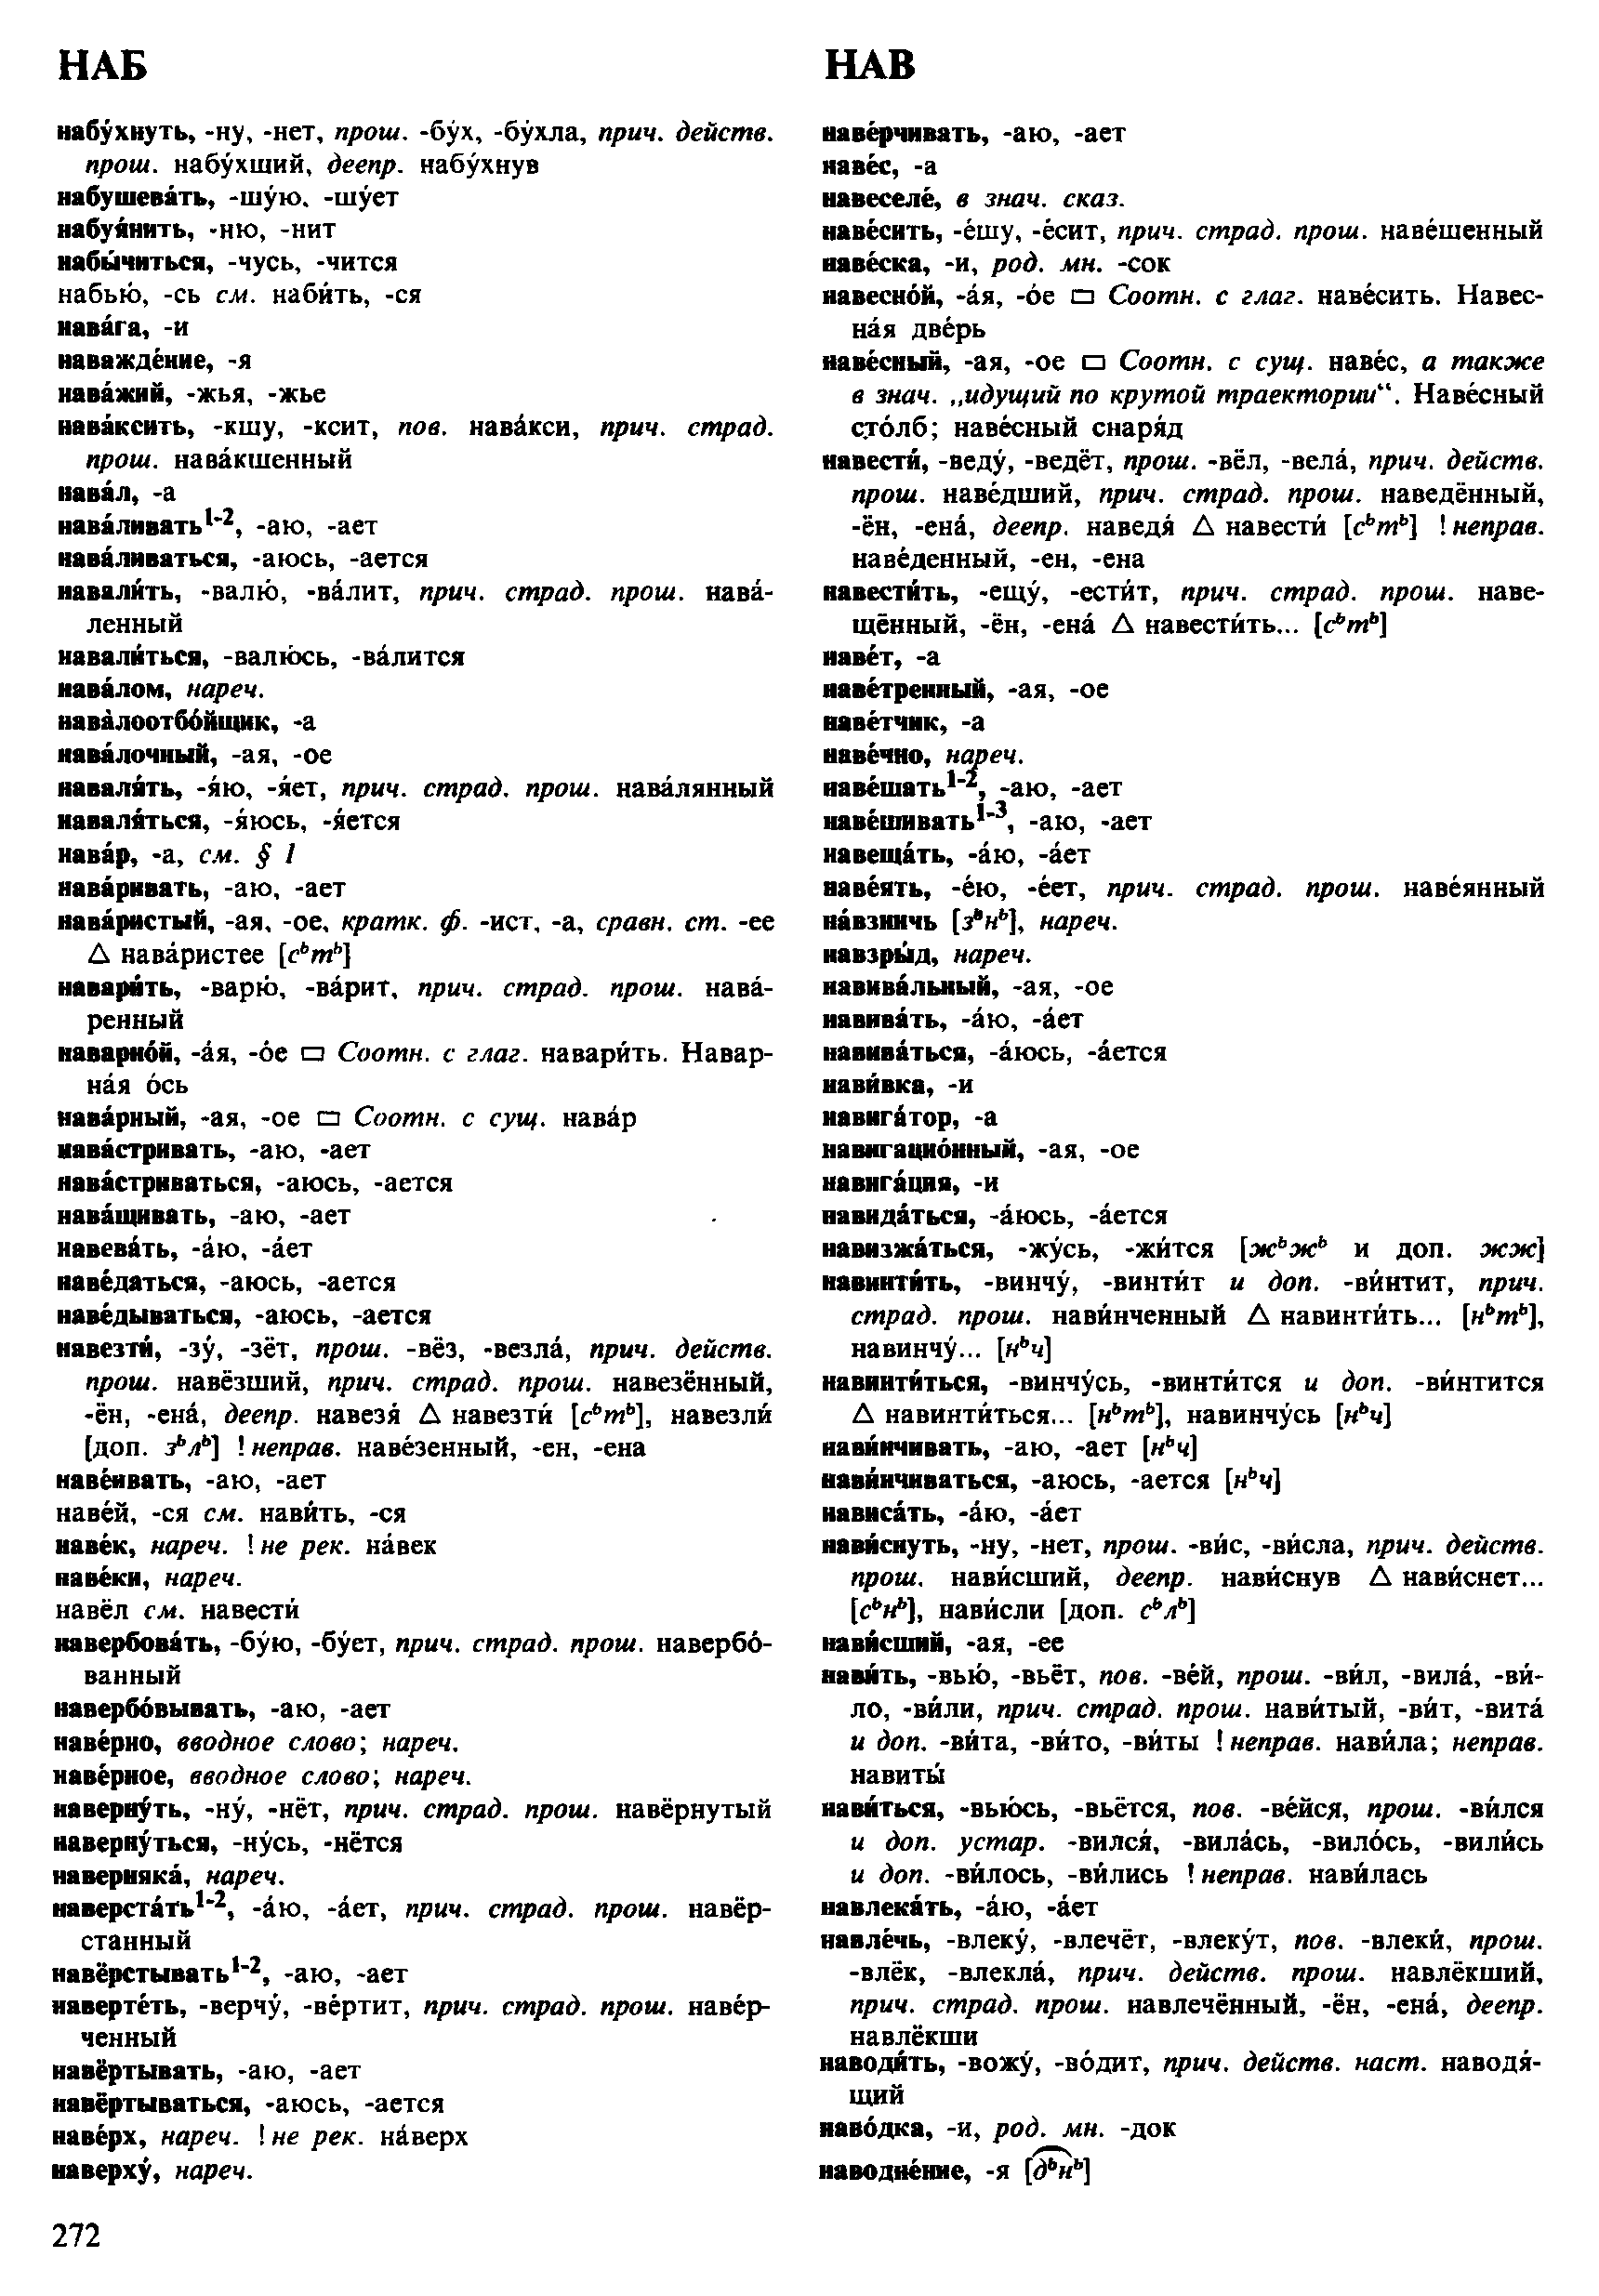 Фотокопия pdf / скан страницы 272 орфоэпического словаря под редакцией Аванесова (4 издание, 1988 год)